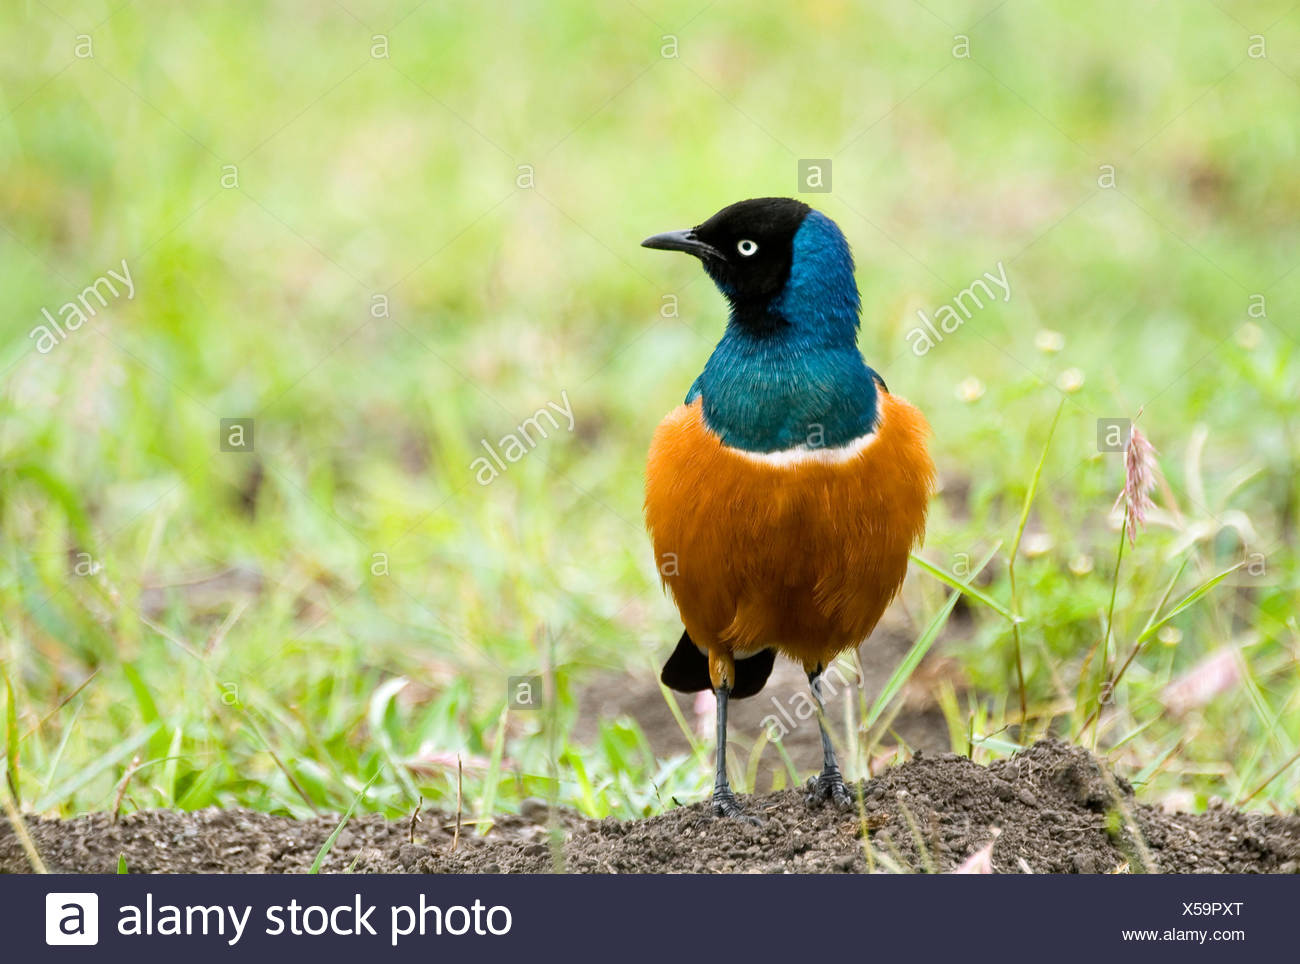 Blue Birds in Kenya